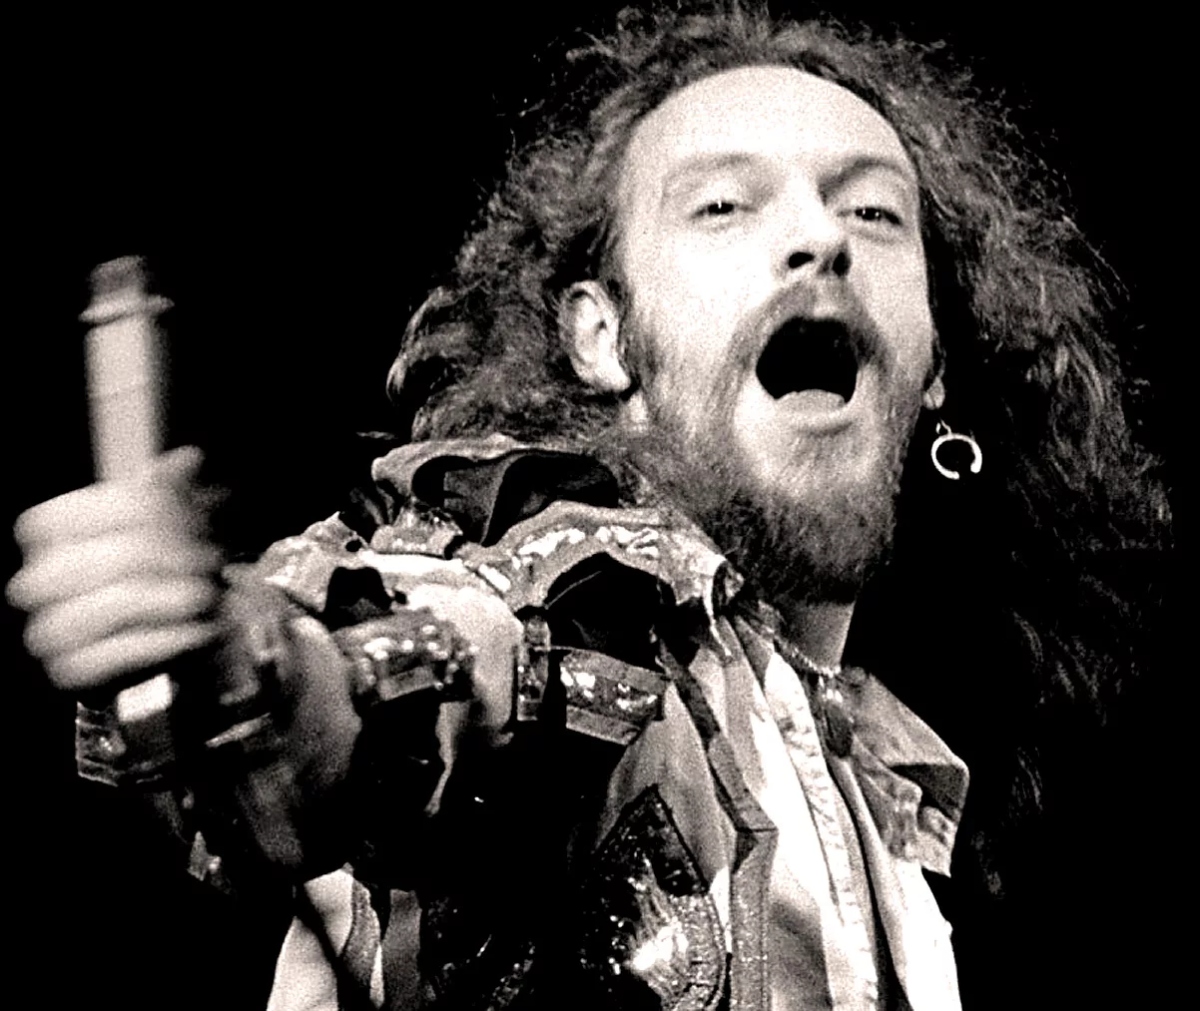 El líder de Jethro Tull, Ian Anderson, de joven